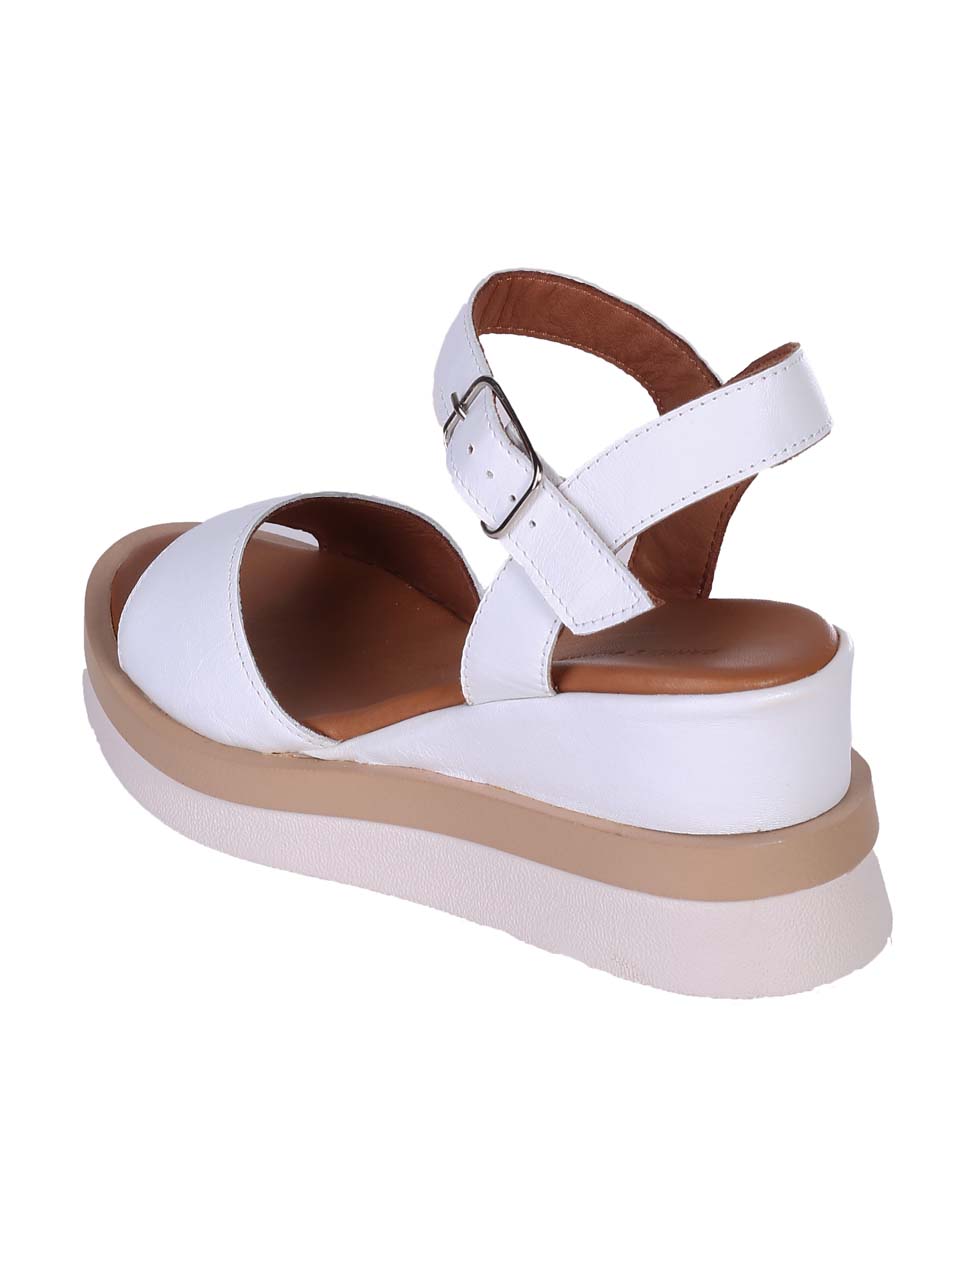 Ежедневни дамски сандали на платформа от естествена кожа в бяло 4AT-24345 white